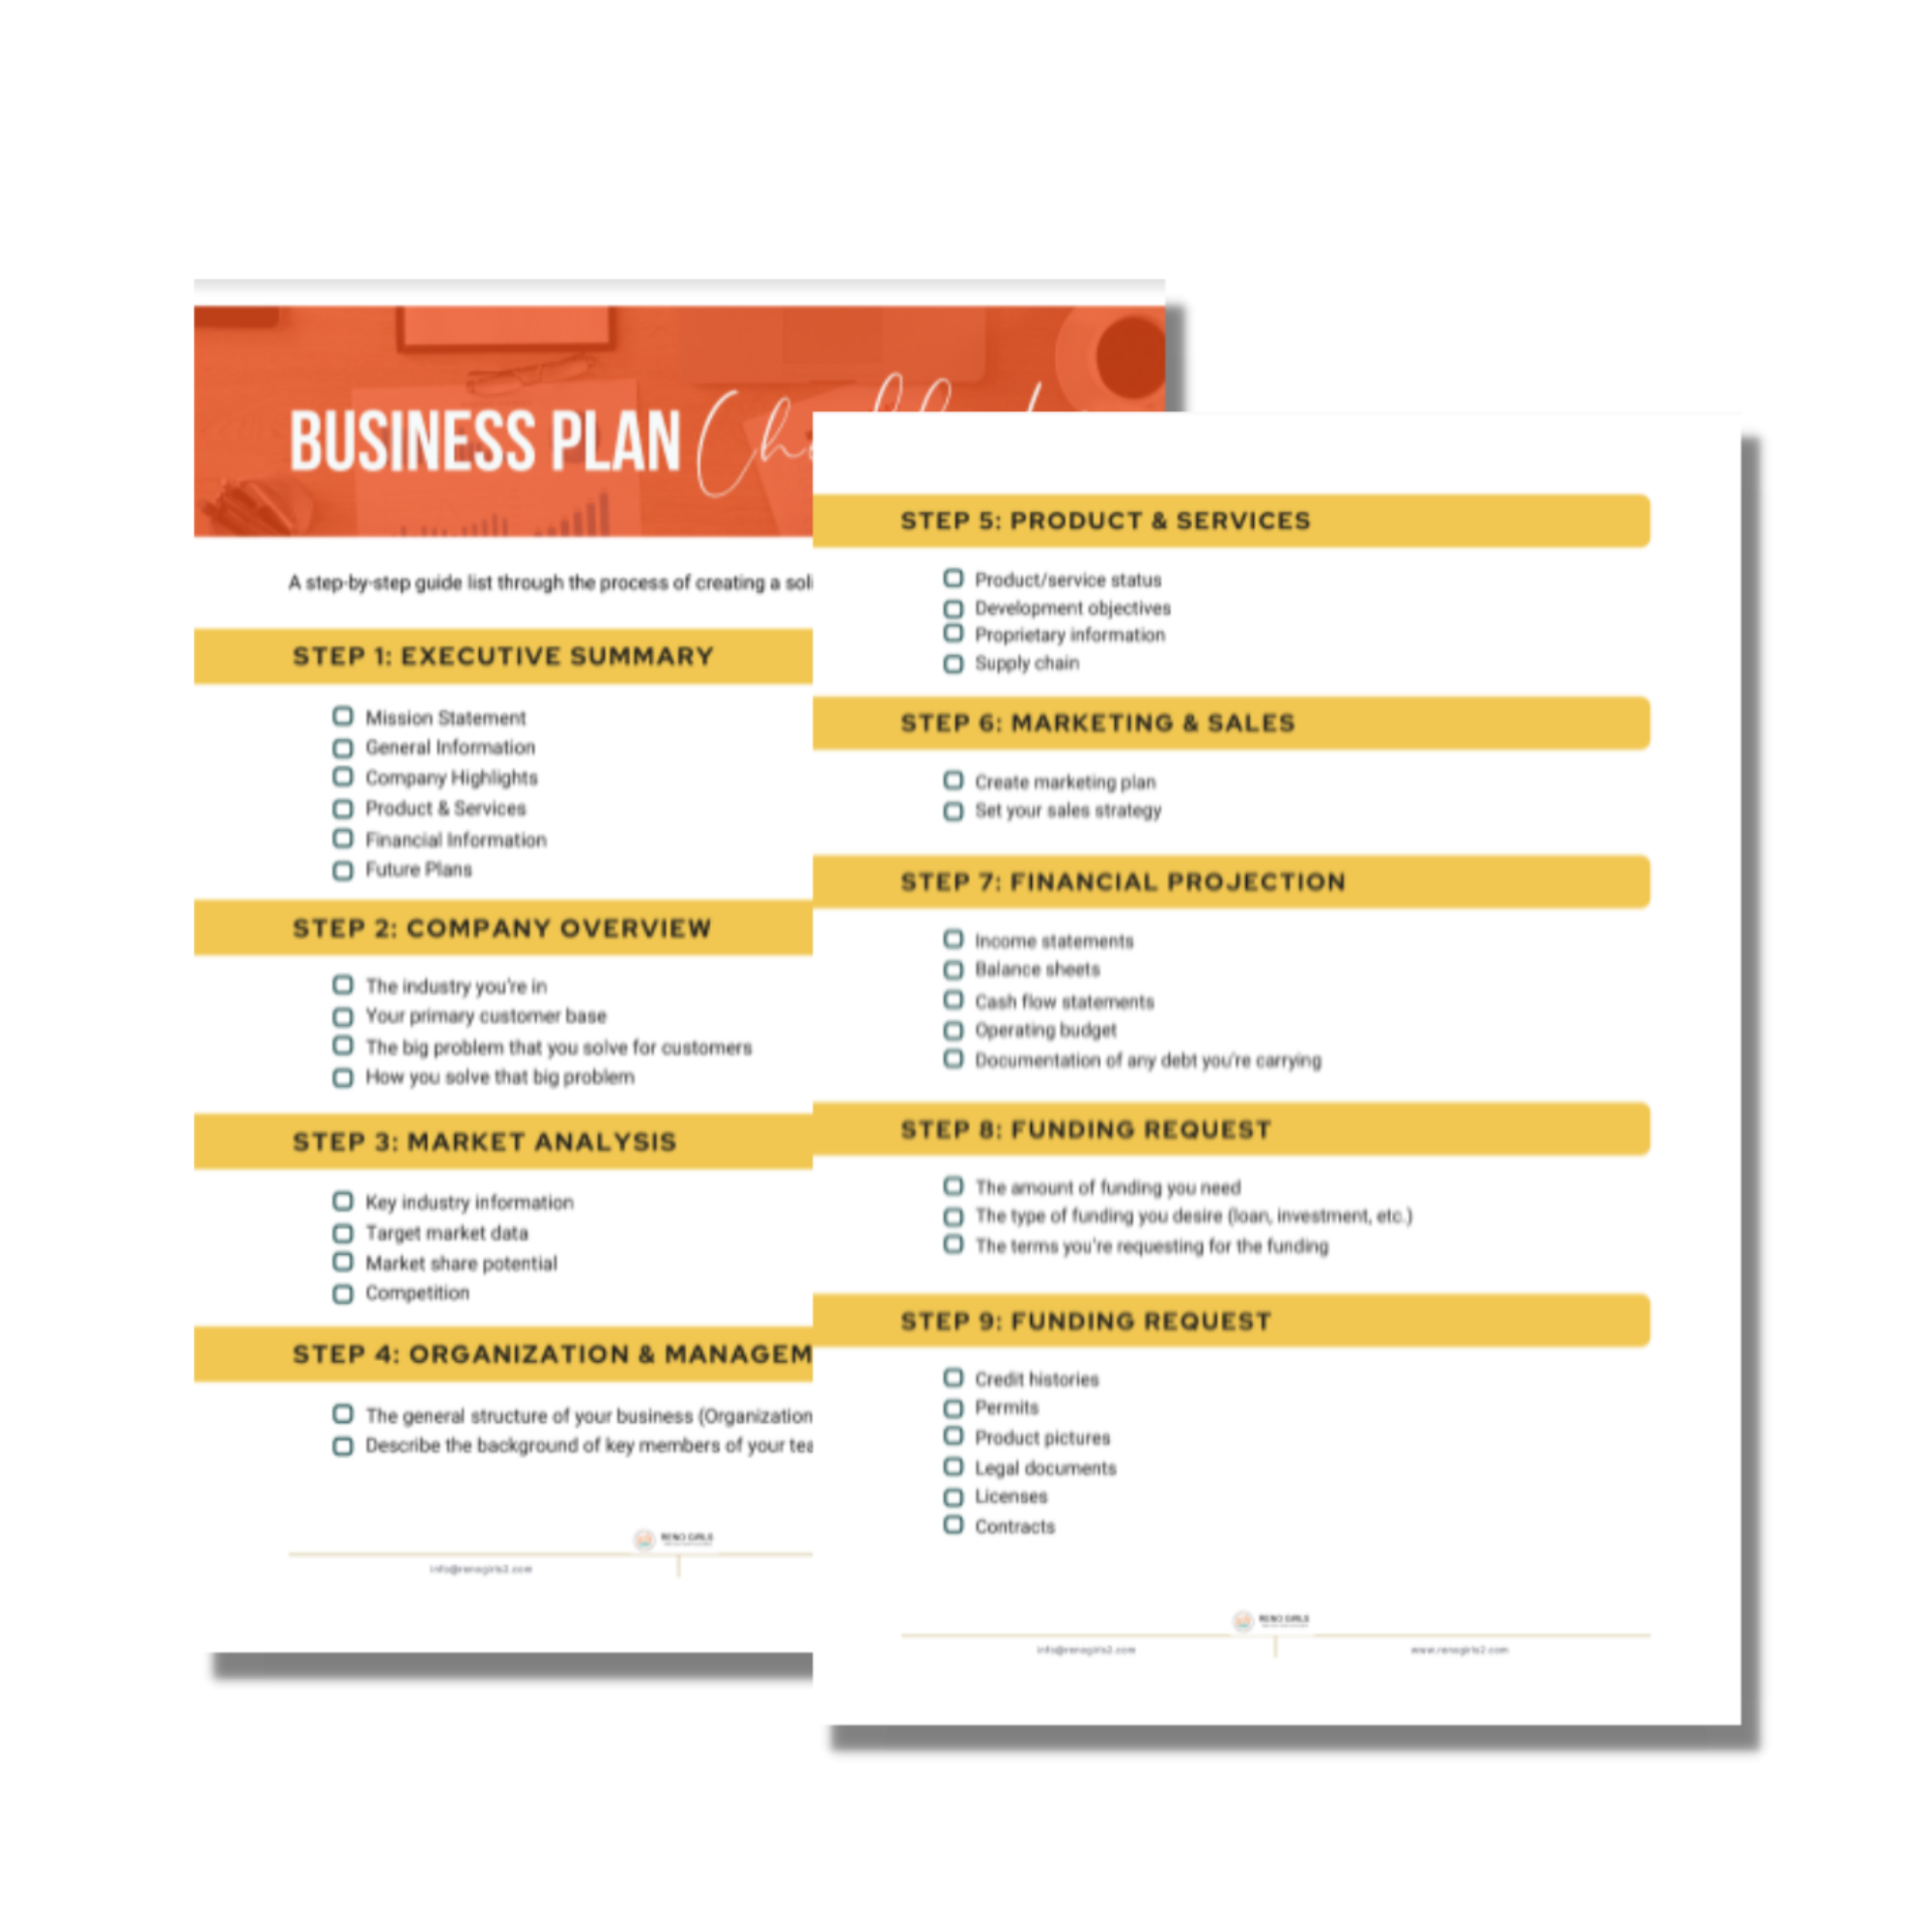 Business Plan Checklist 6916